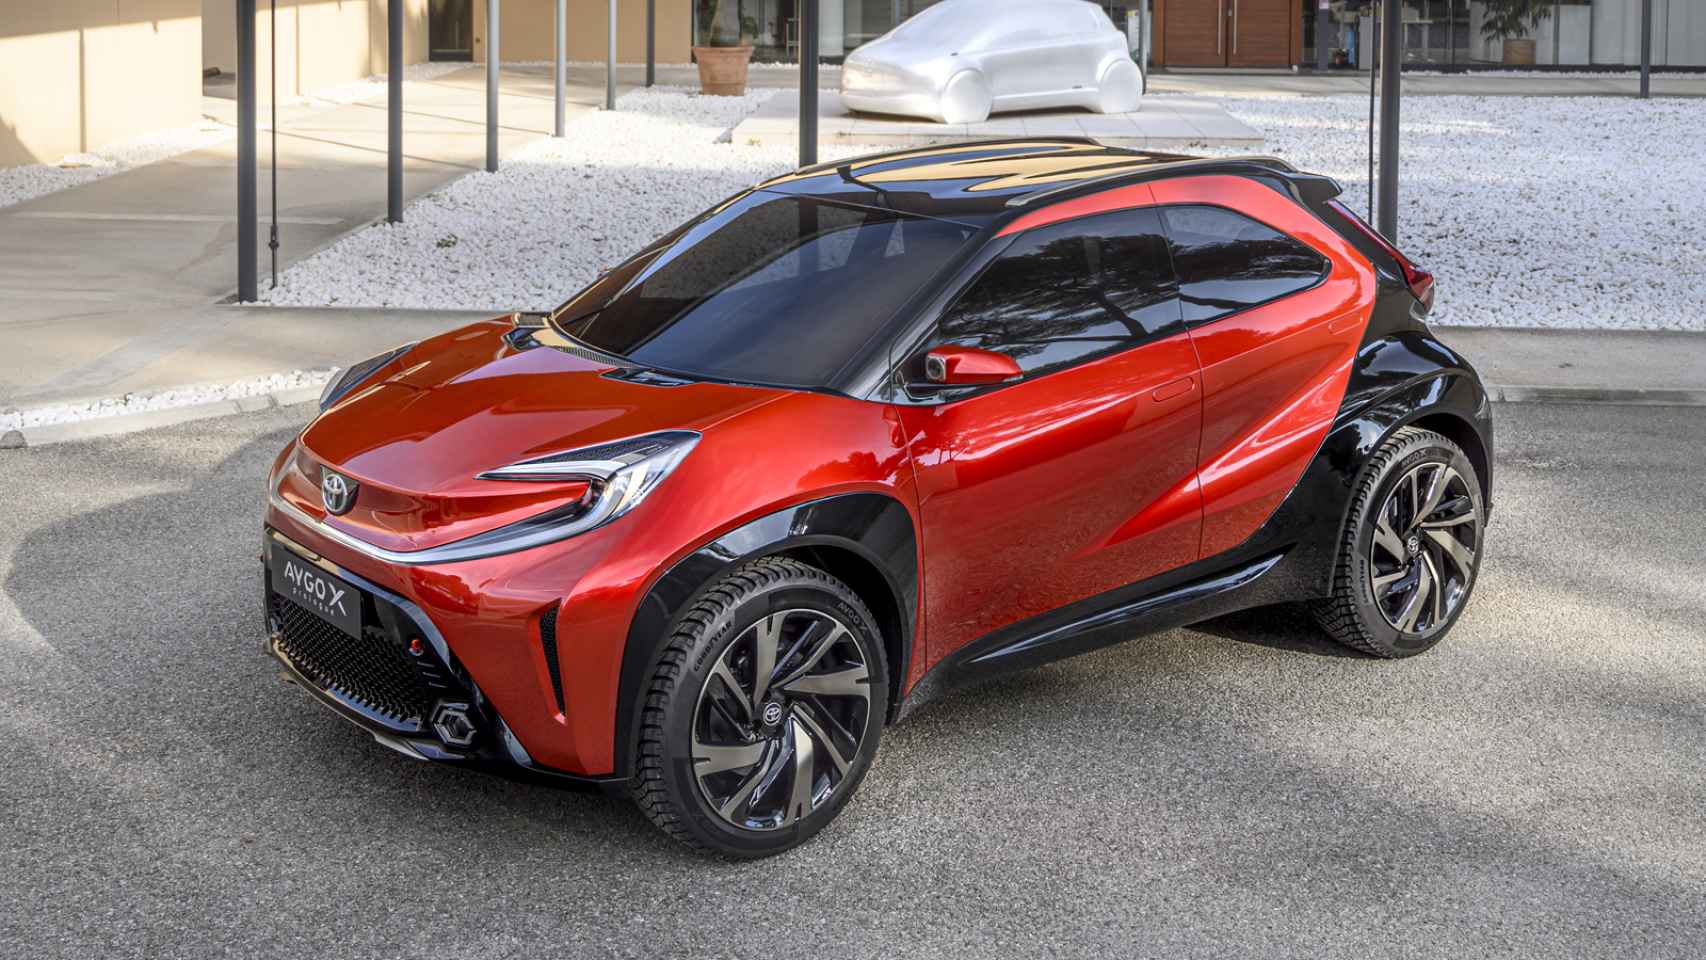 Con este modelo Toyota dice adiós a su colaboración con Peugeot y Citroën en los coches pequeños.